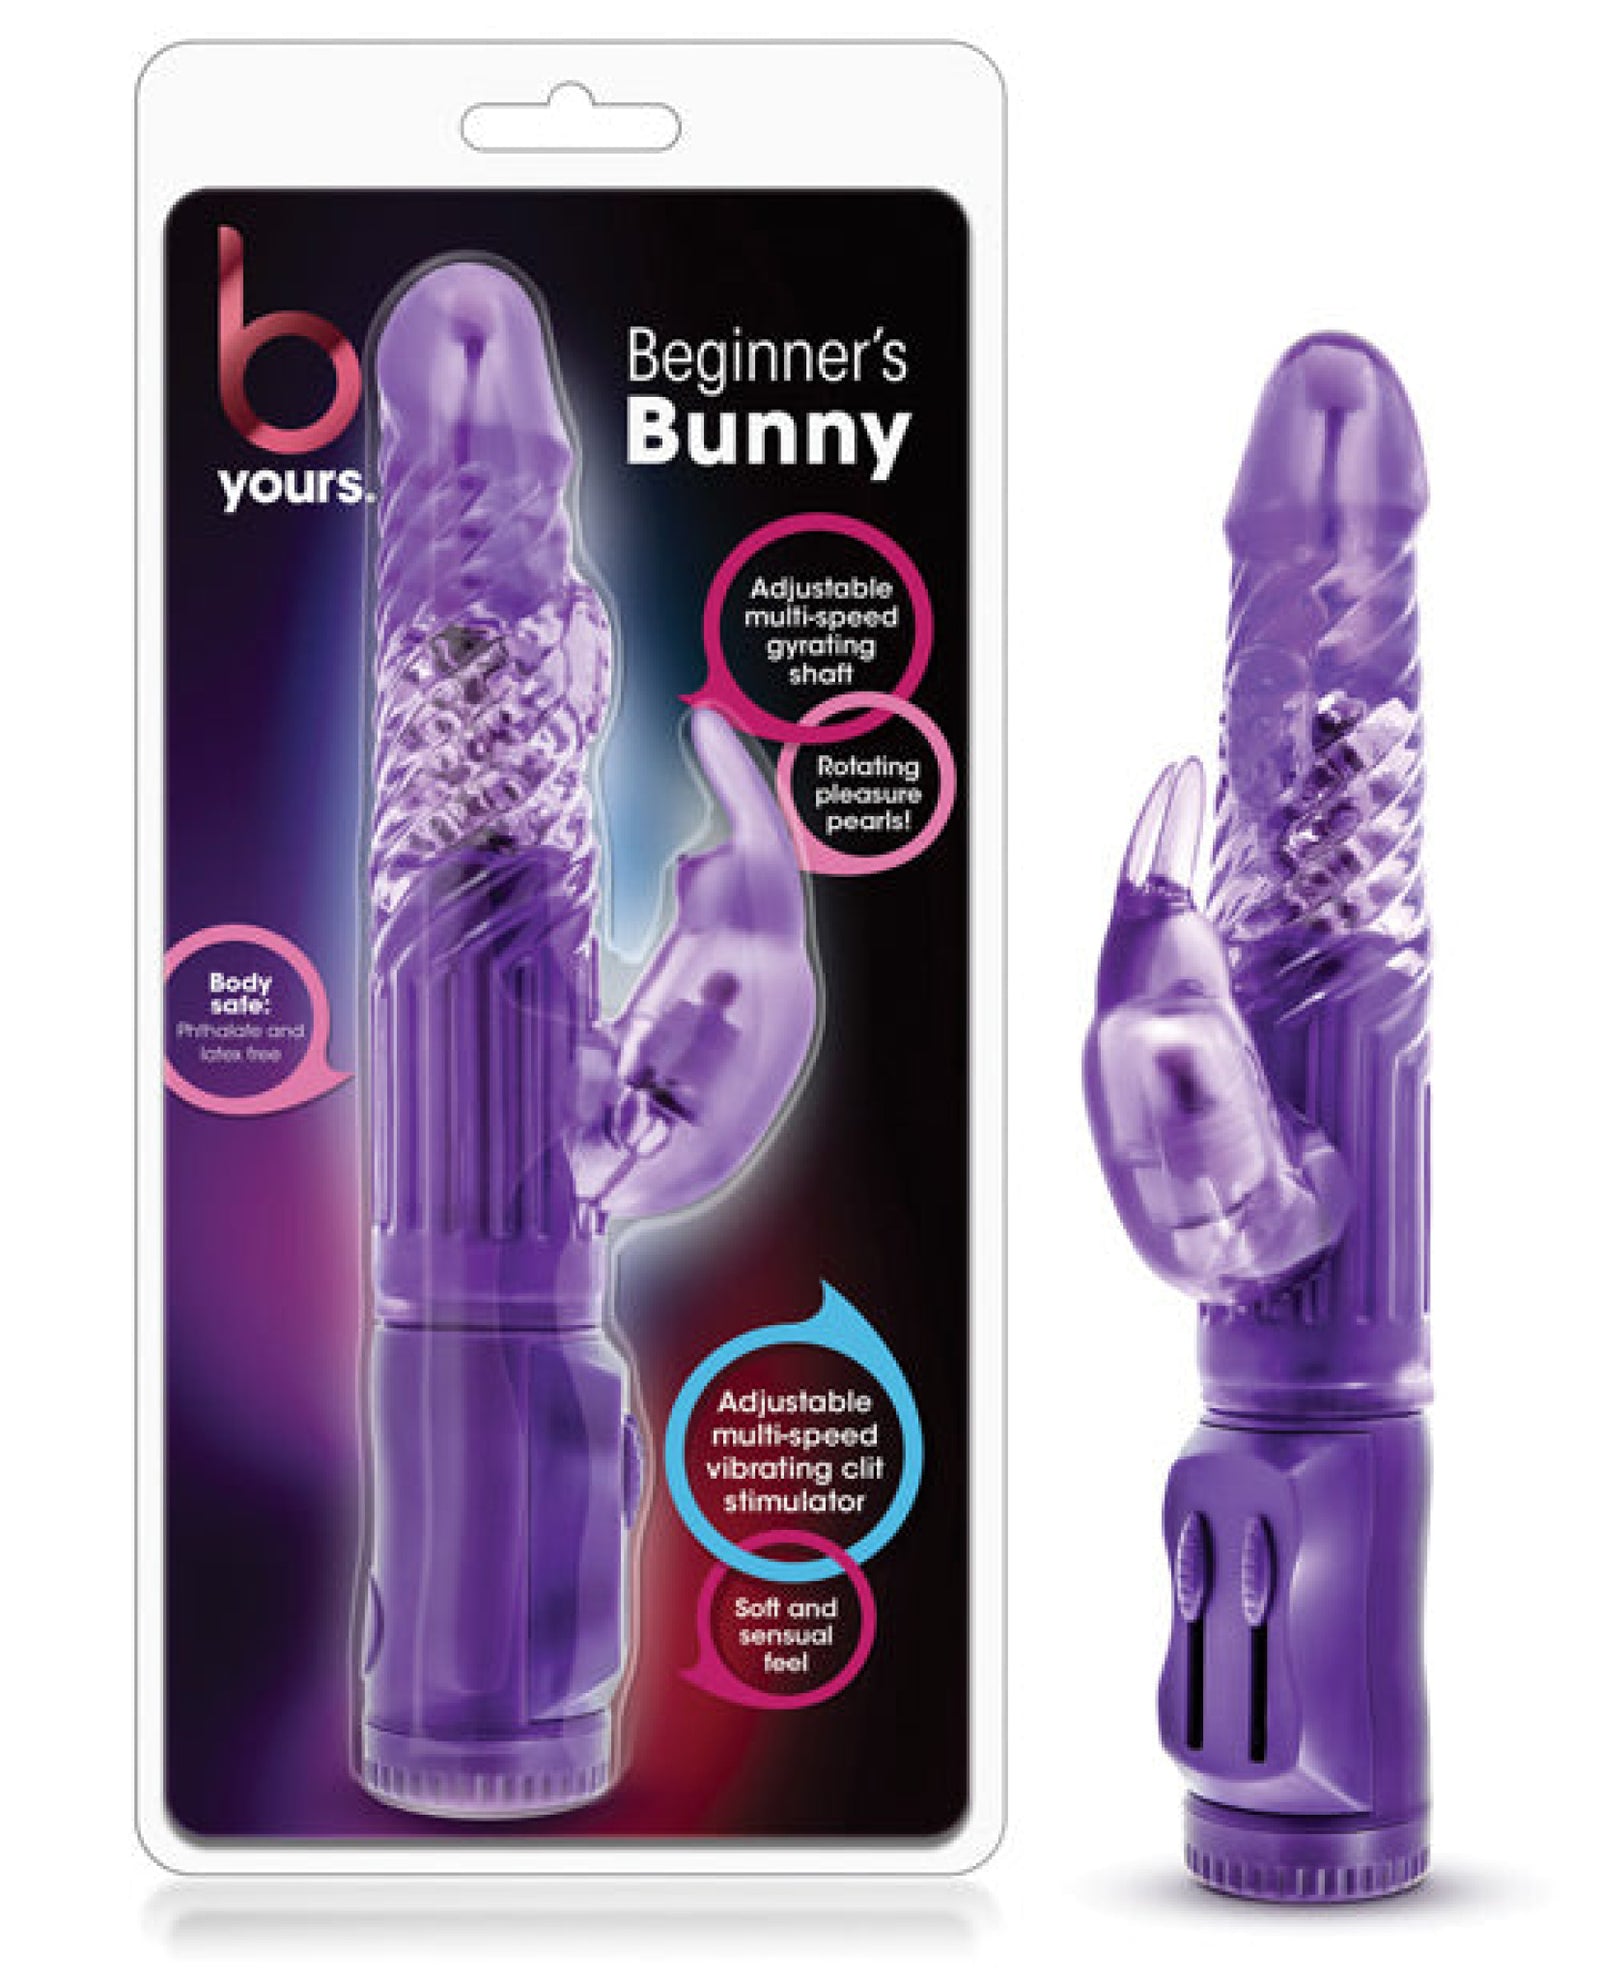 Blush B Yours Beginner's Bunny Blush